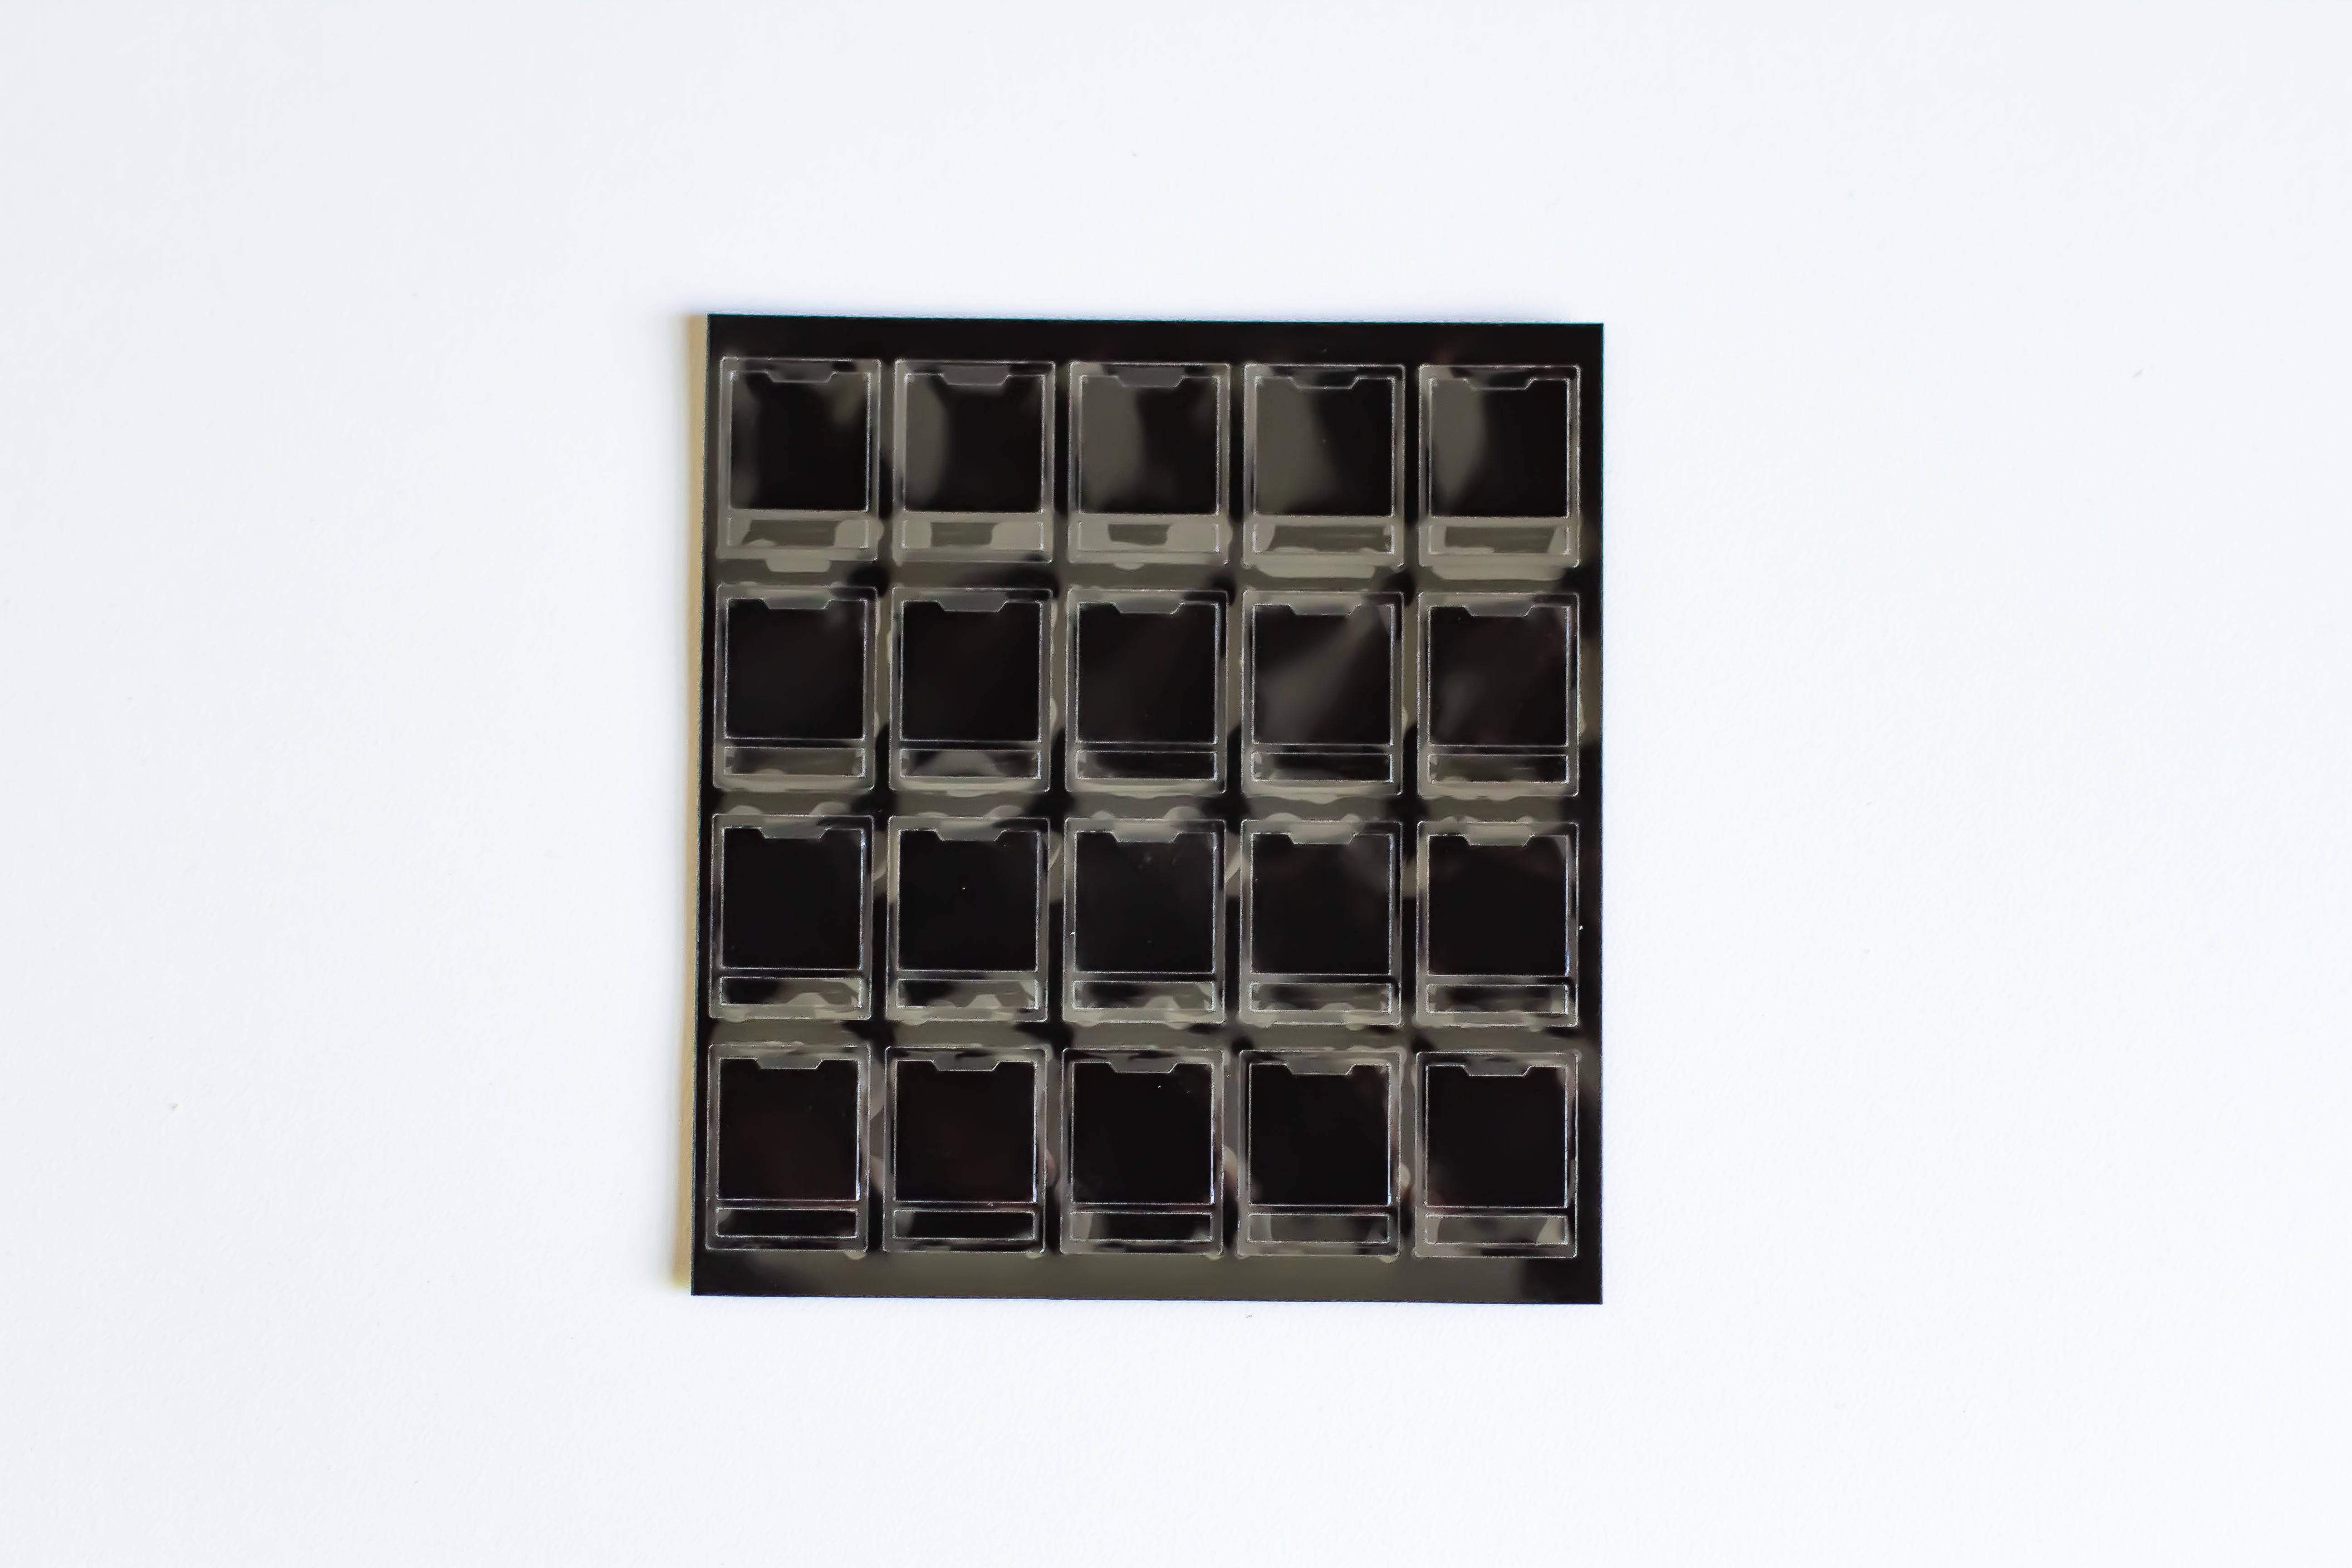 A single sheet of Deskeys mechanical keyboard switch films.